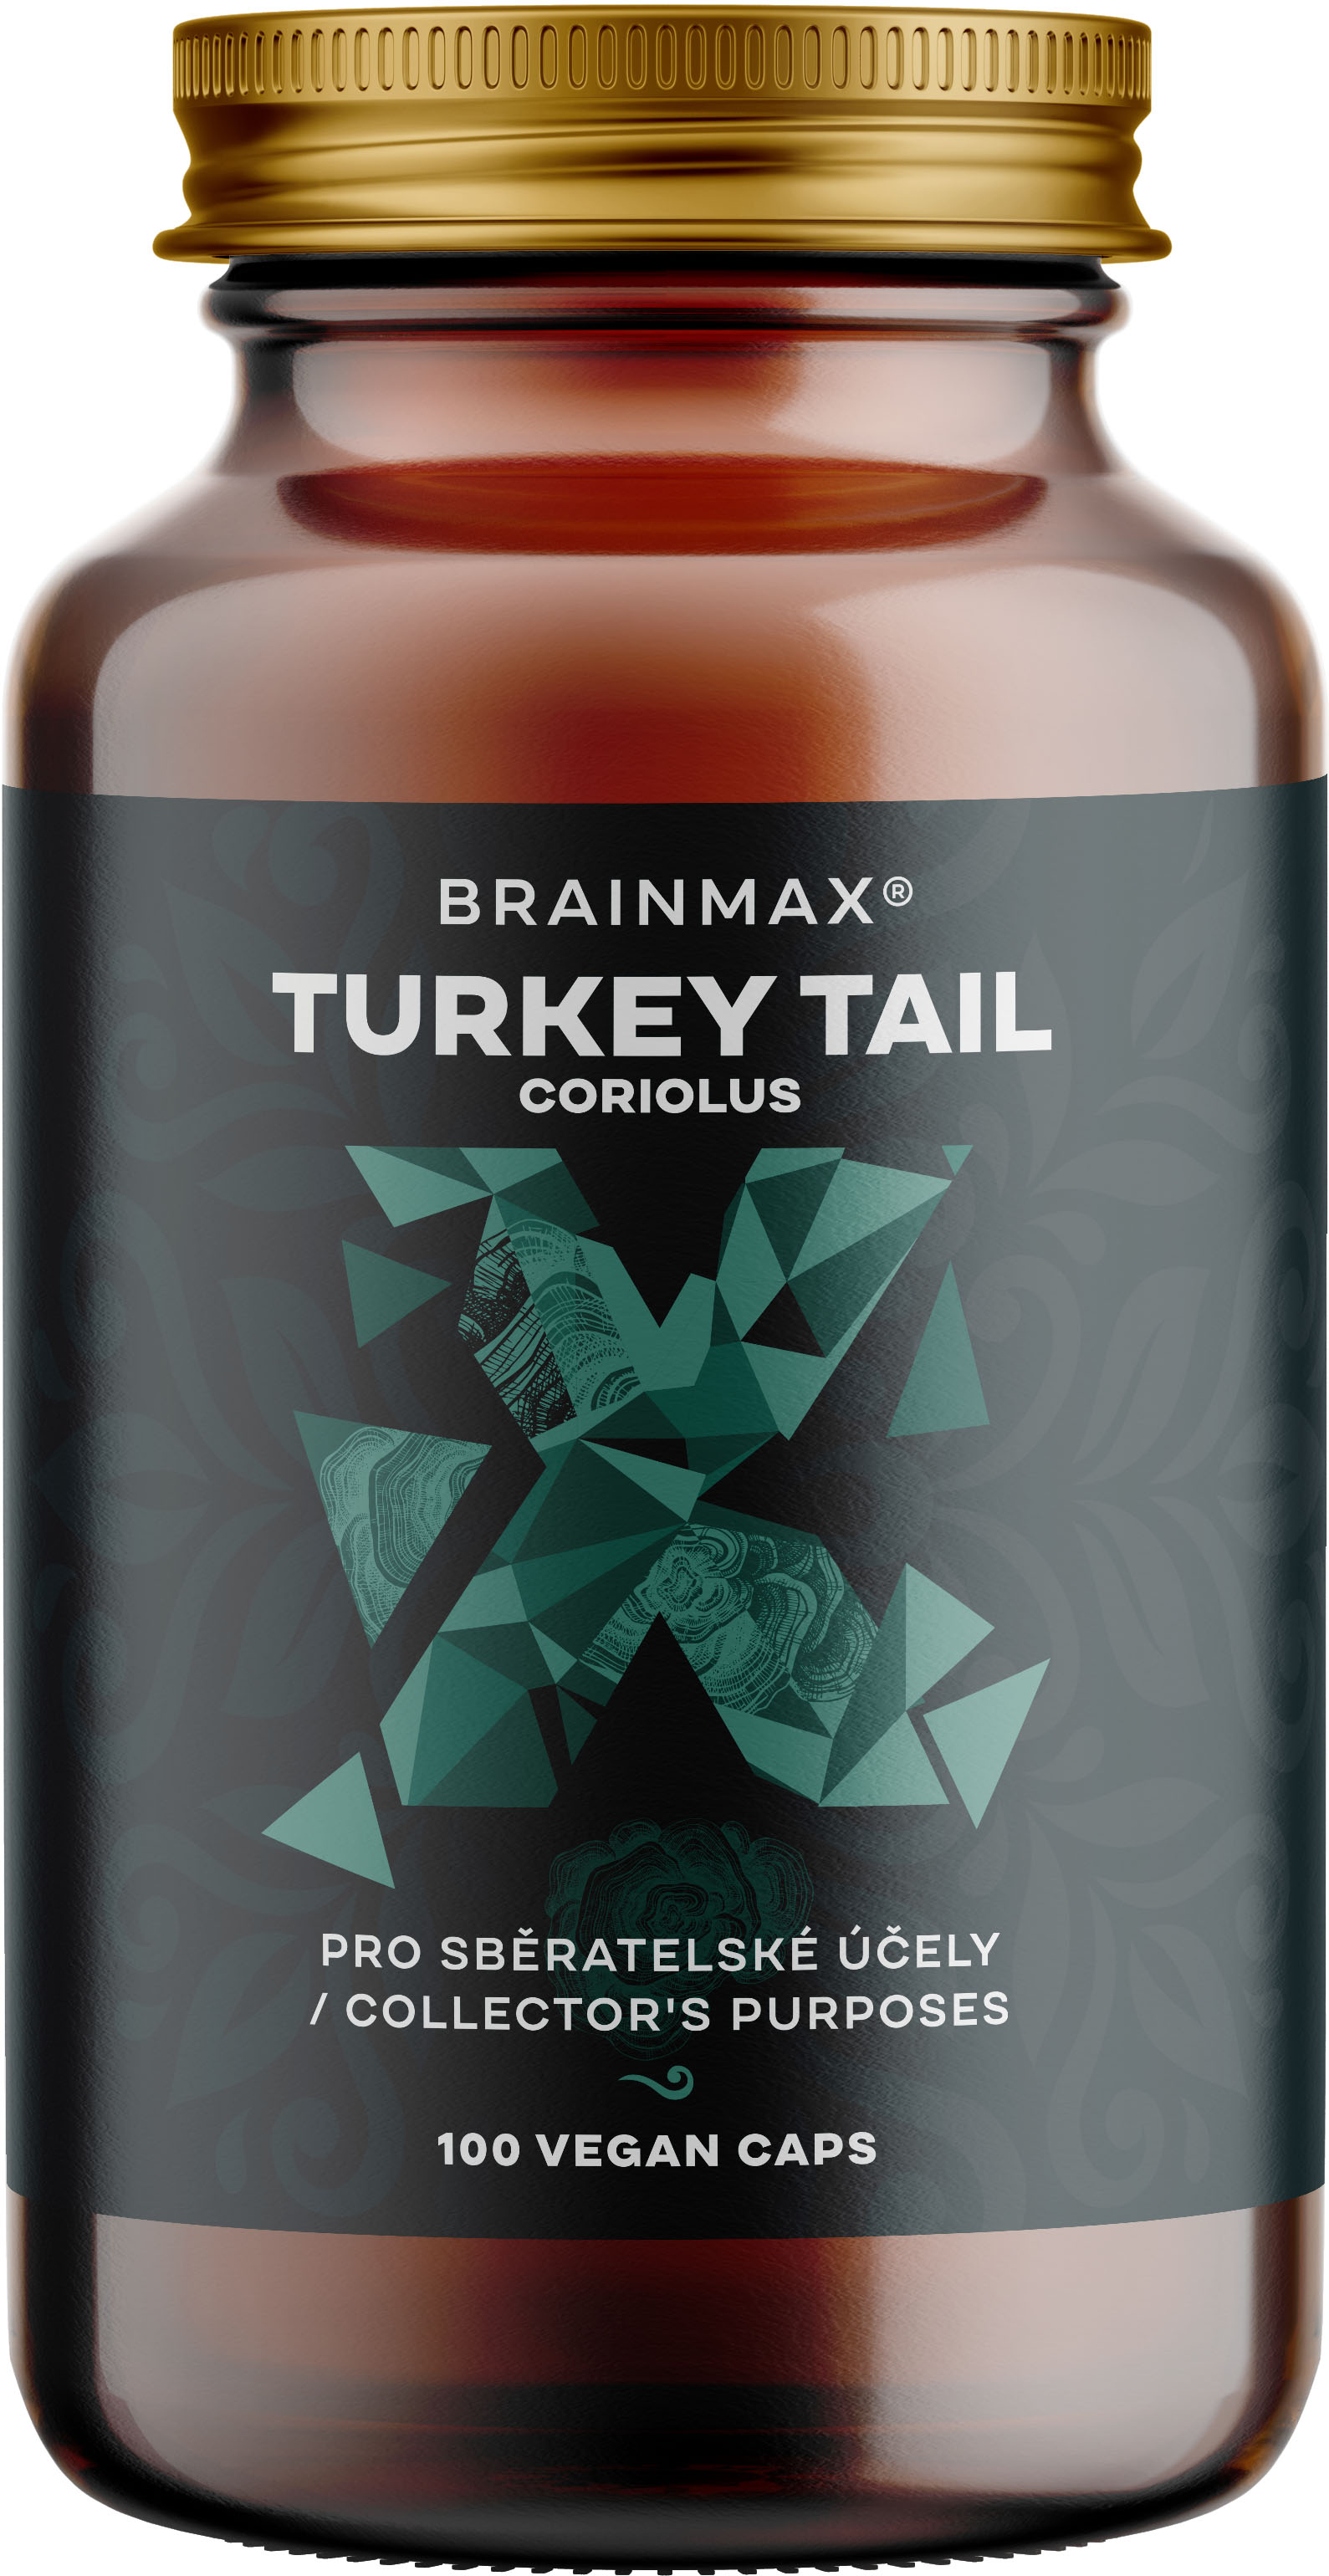 BrainMax Turkey Tail (Coriolus) extrakt, 50% koncentrace polysacharidů a 20 % β-1,3/1,6 D-glukanů, 500 mg, 100 rostlinných kapslí Extrakt z outkovky pestré, doplněk stravy